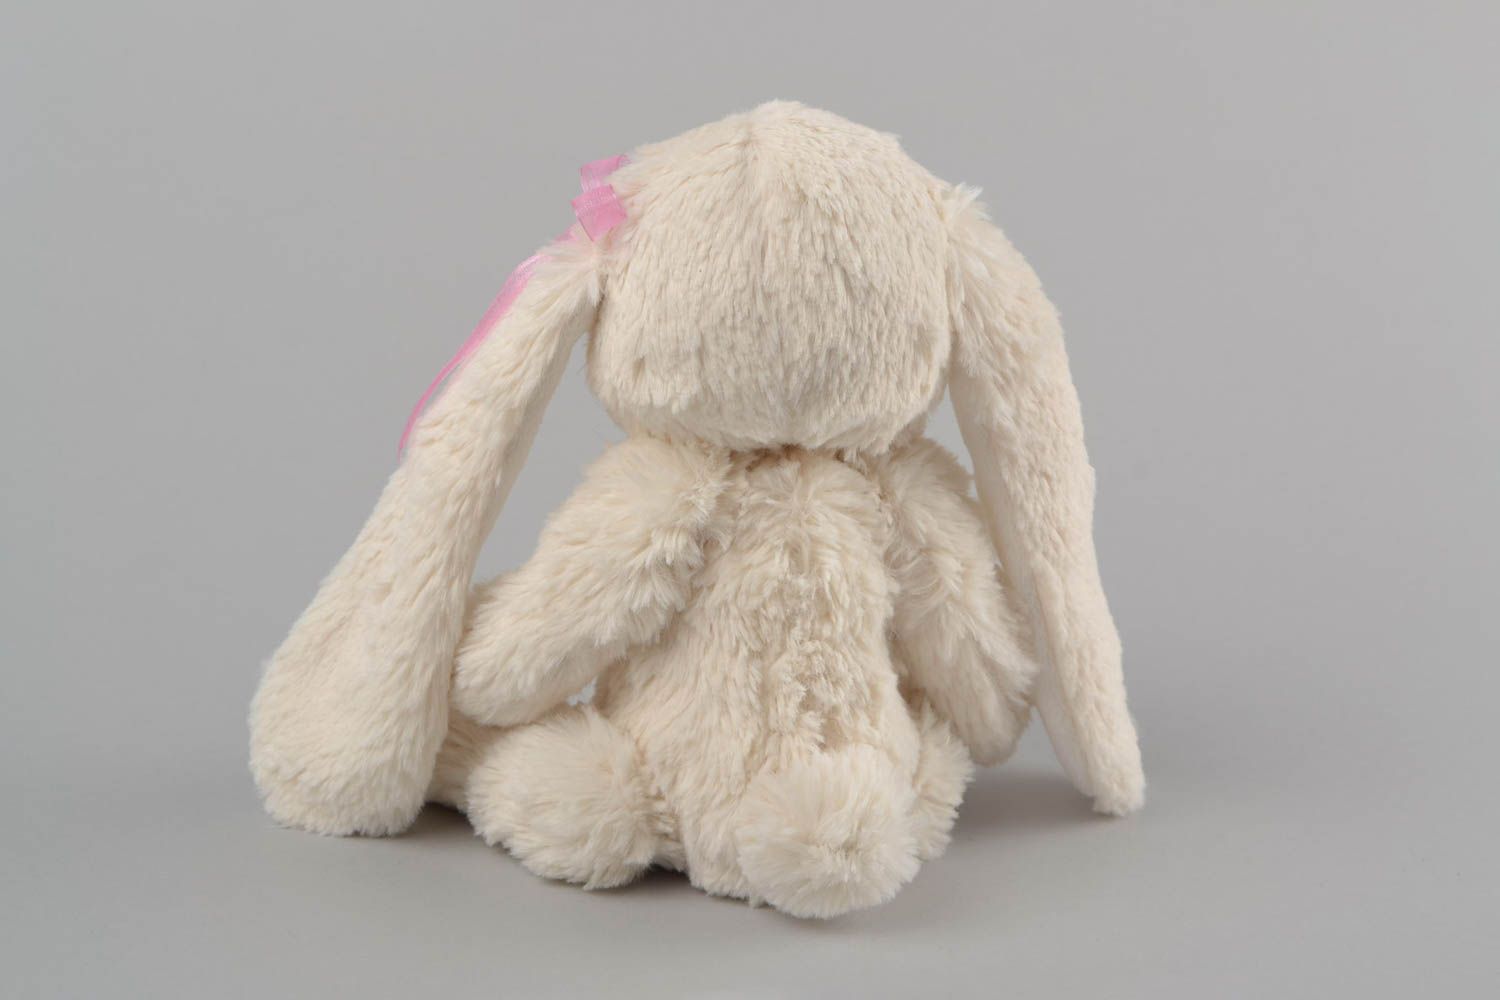 Textil Kuscheltier Hase aus Kunstpelz handmade Schmuck für Haus Dekor niedlich foto 5